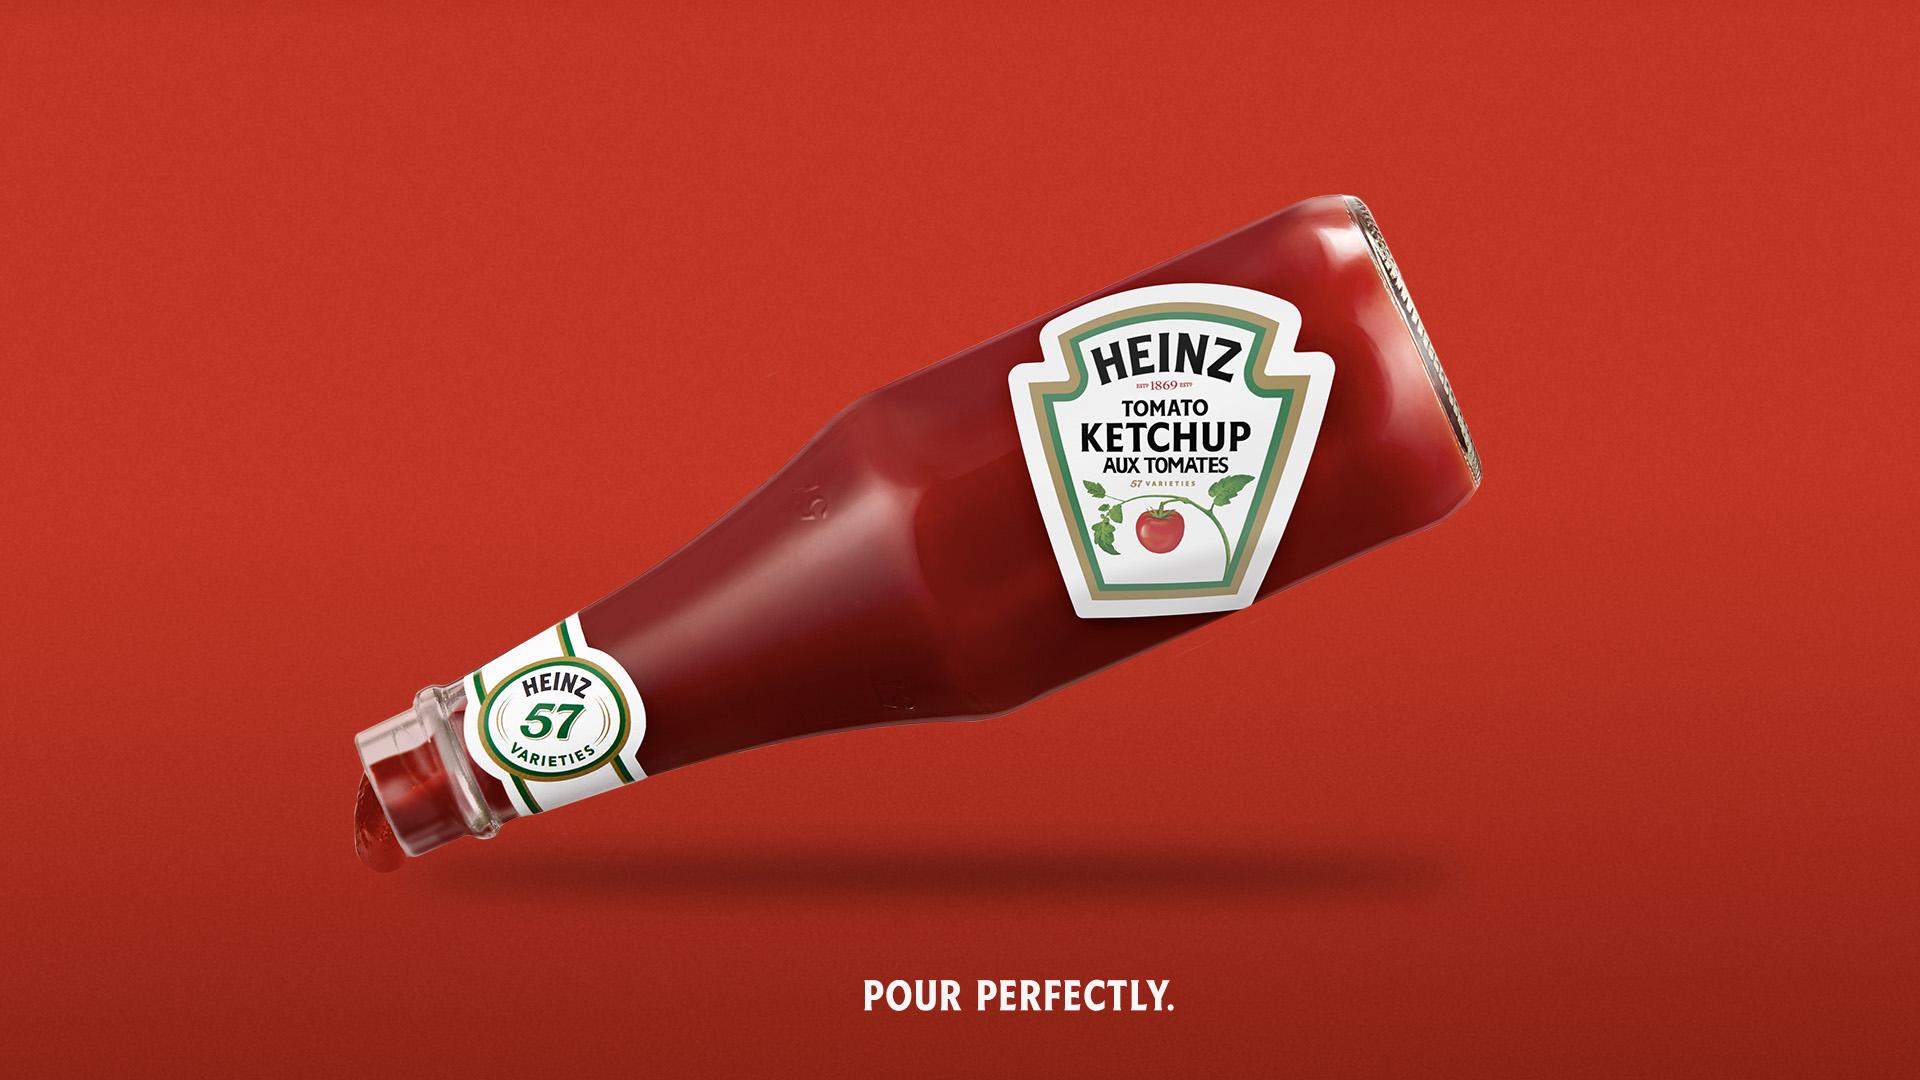 De juiste invalshoek van Heinz